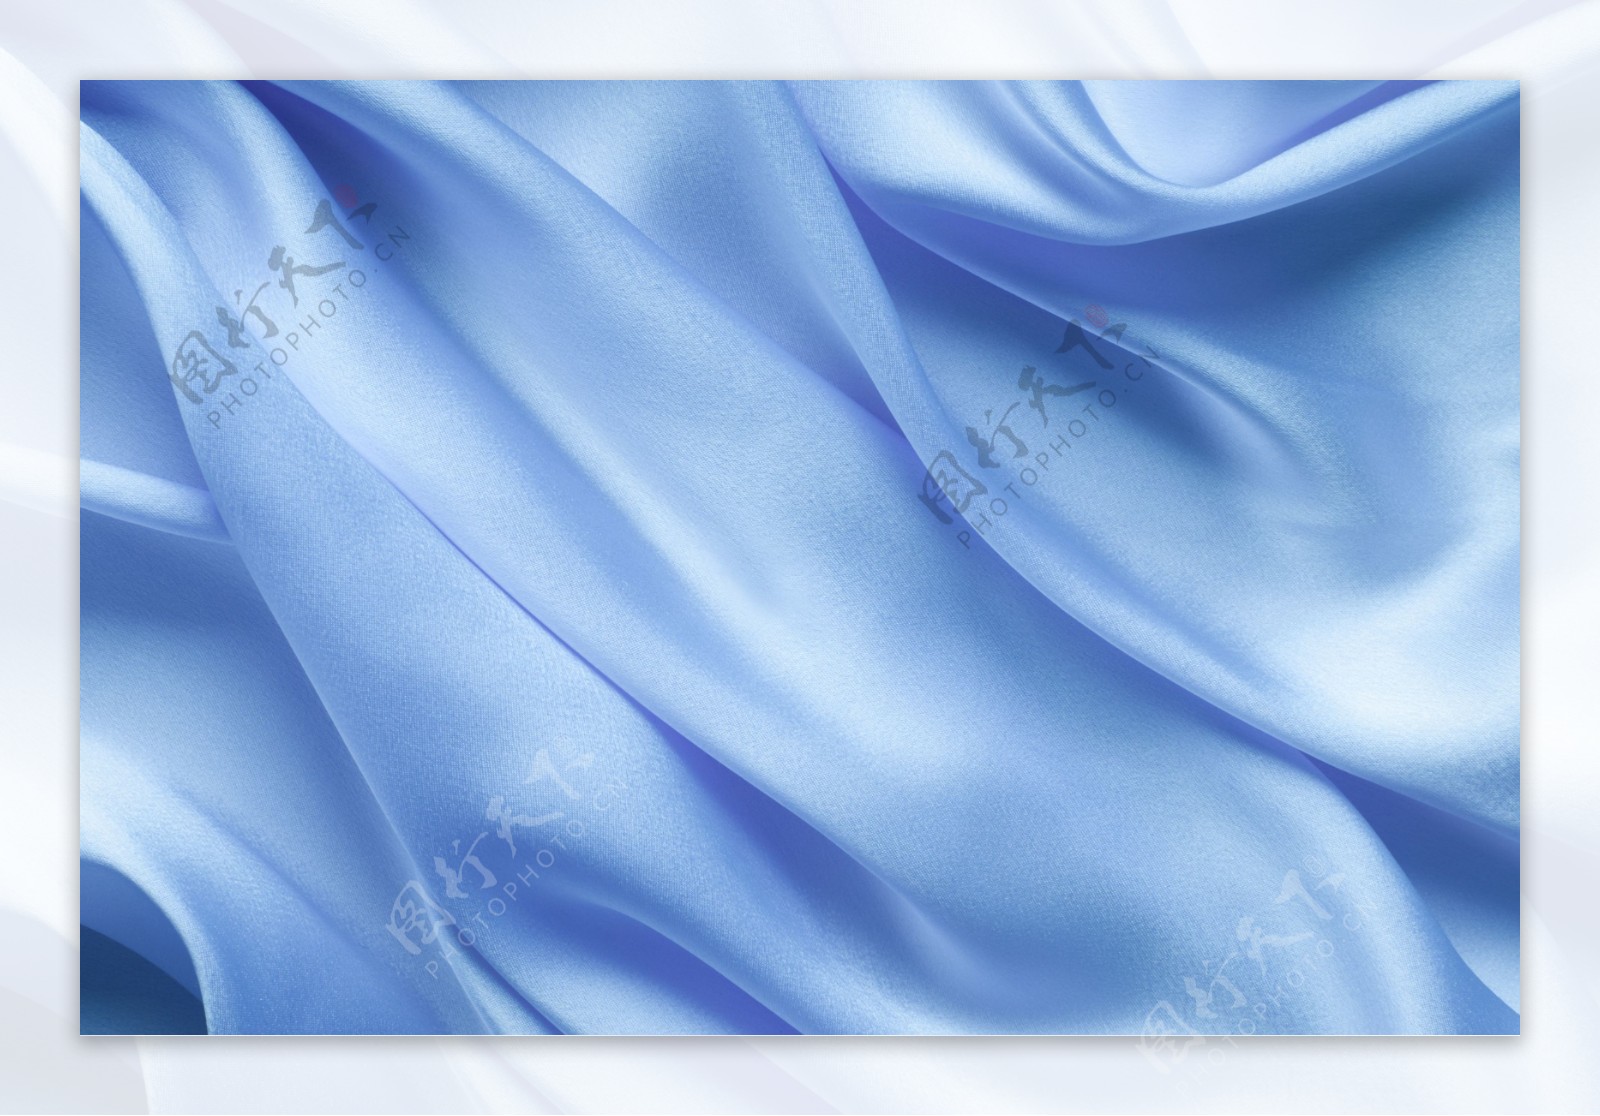 蓝色丝绸背景图片